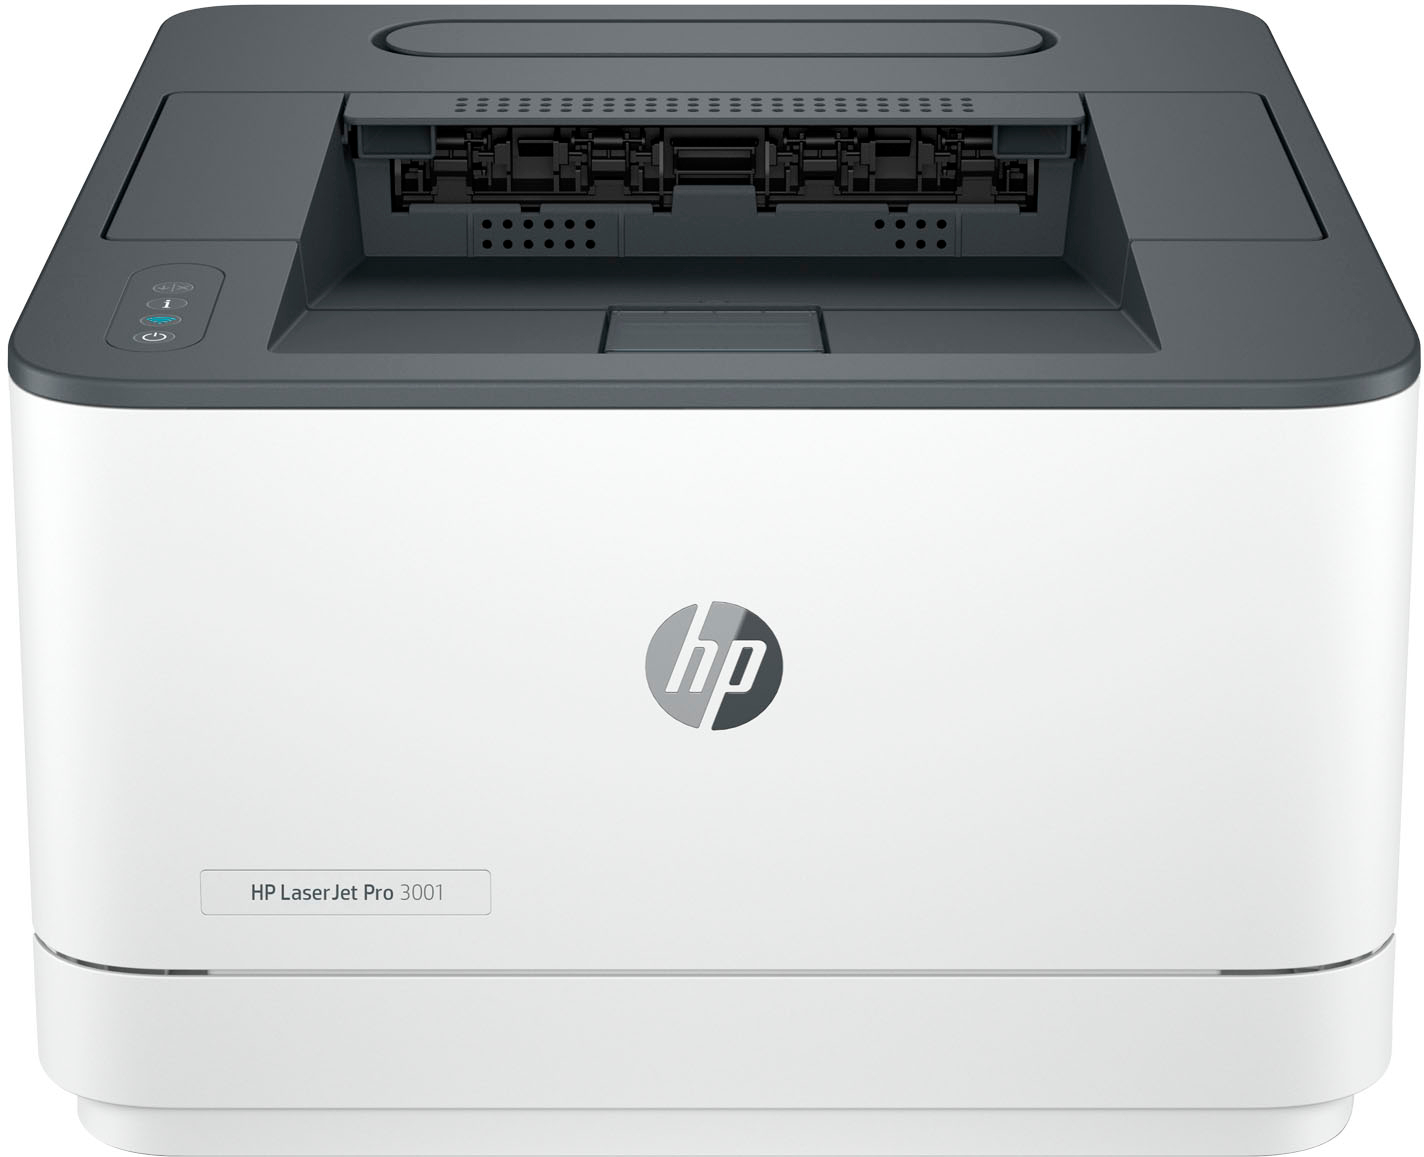 Náplně do tiskárny HP LaserJet Pro 3002dne